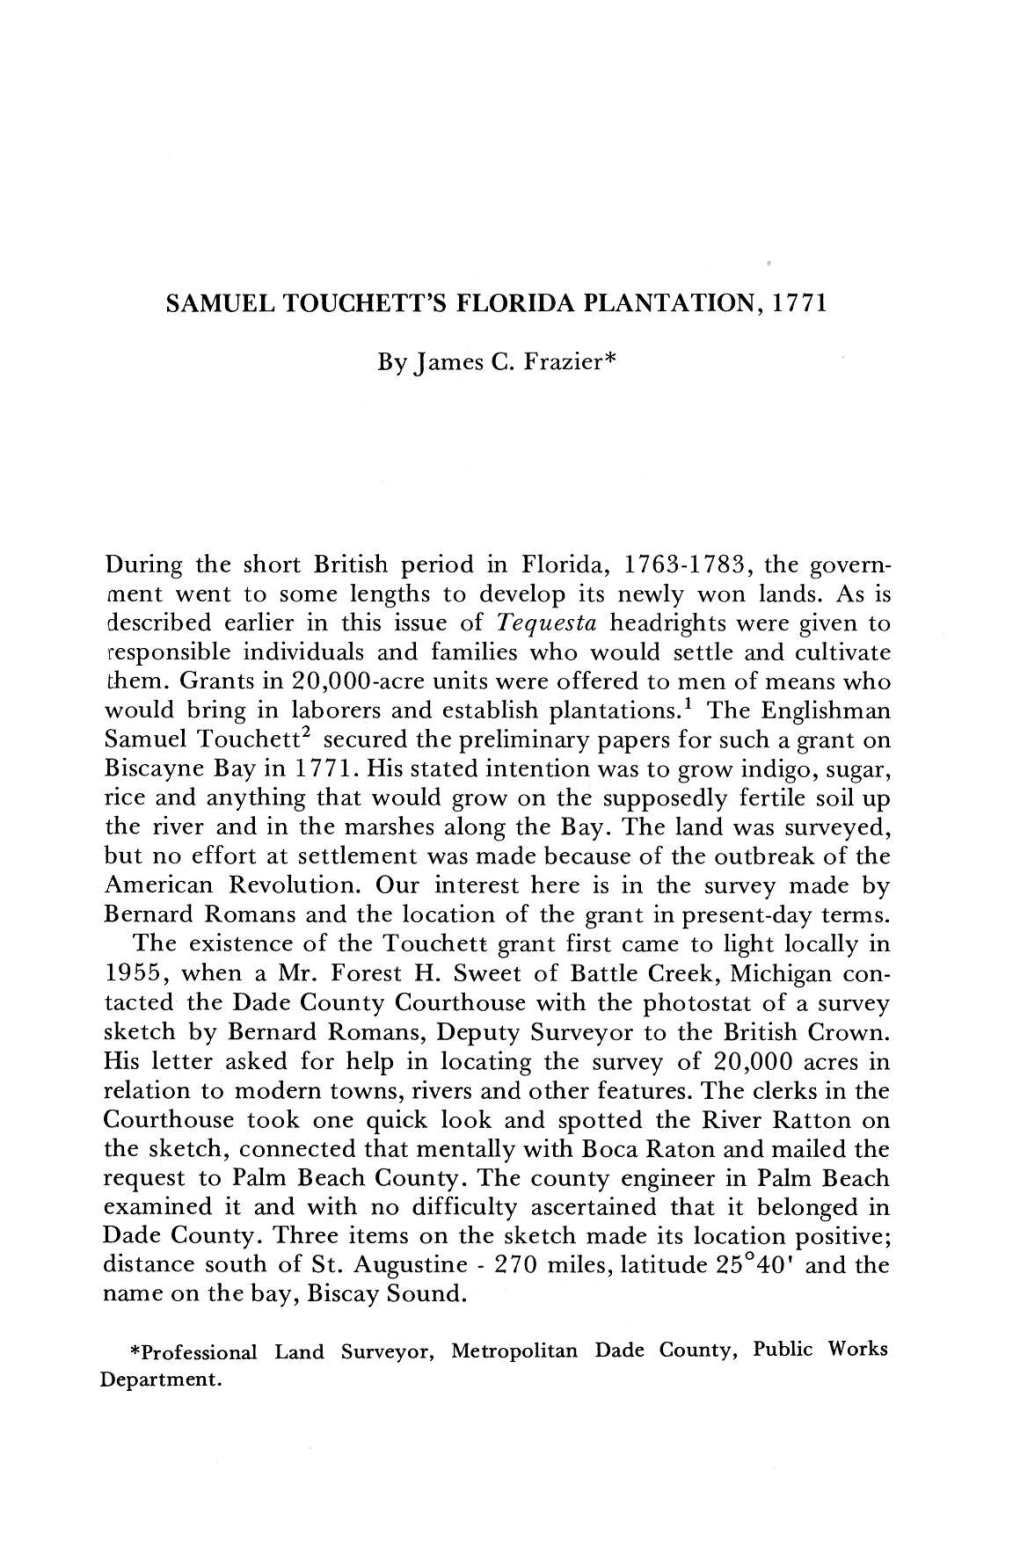 The Samuel Touchett Plantation, 1773 : Tequesta